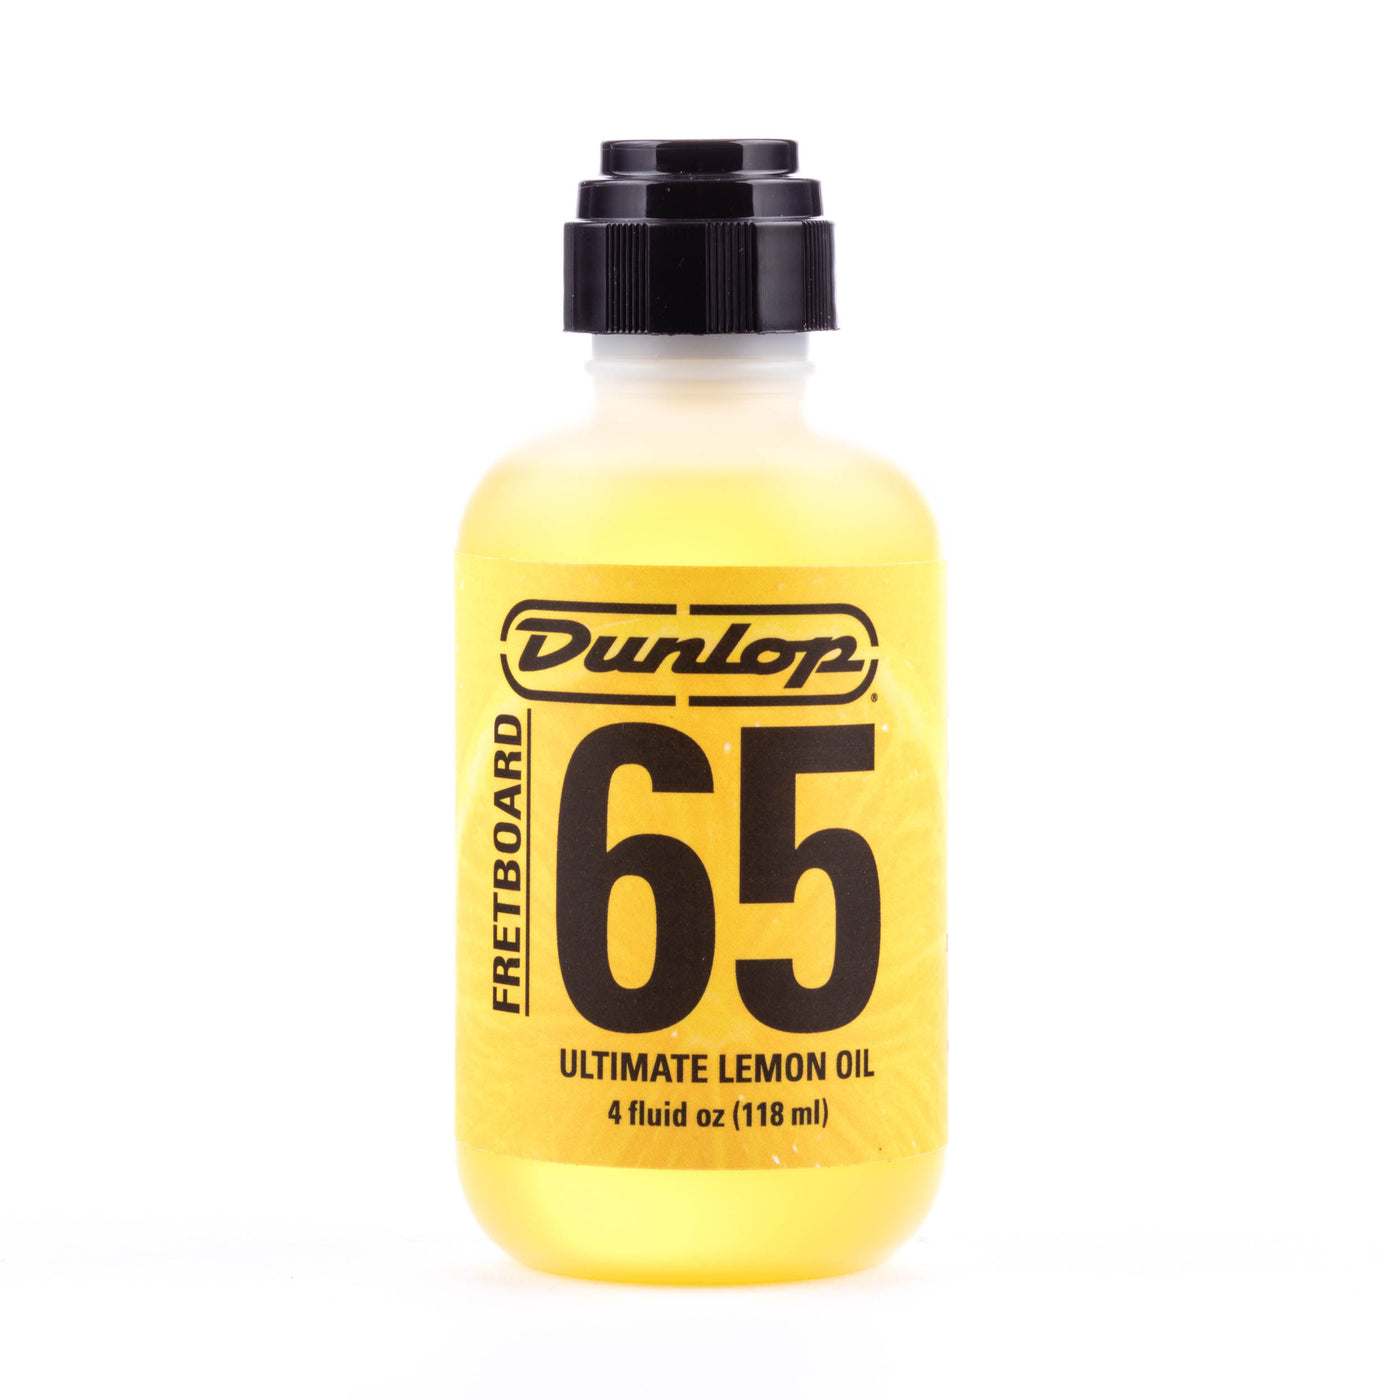 65 Ultimate Lemon Oil